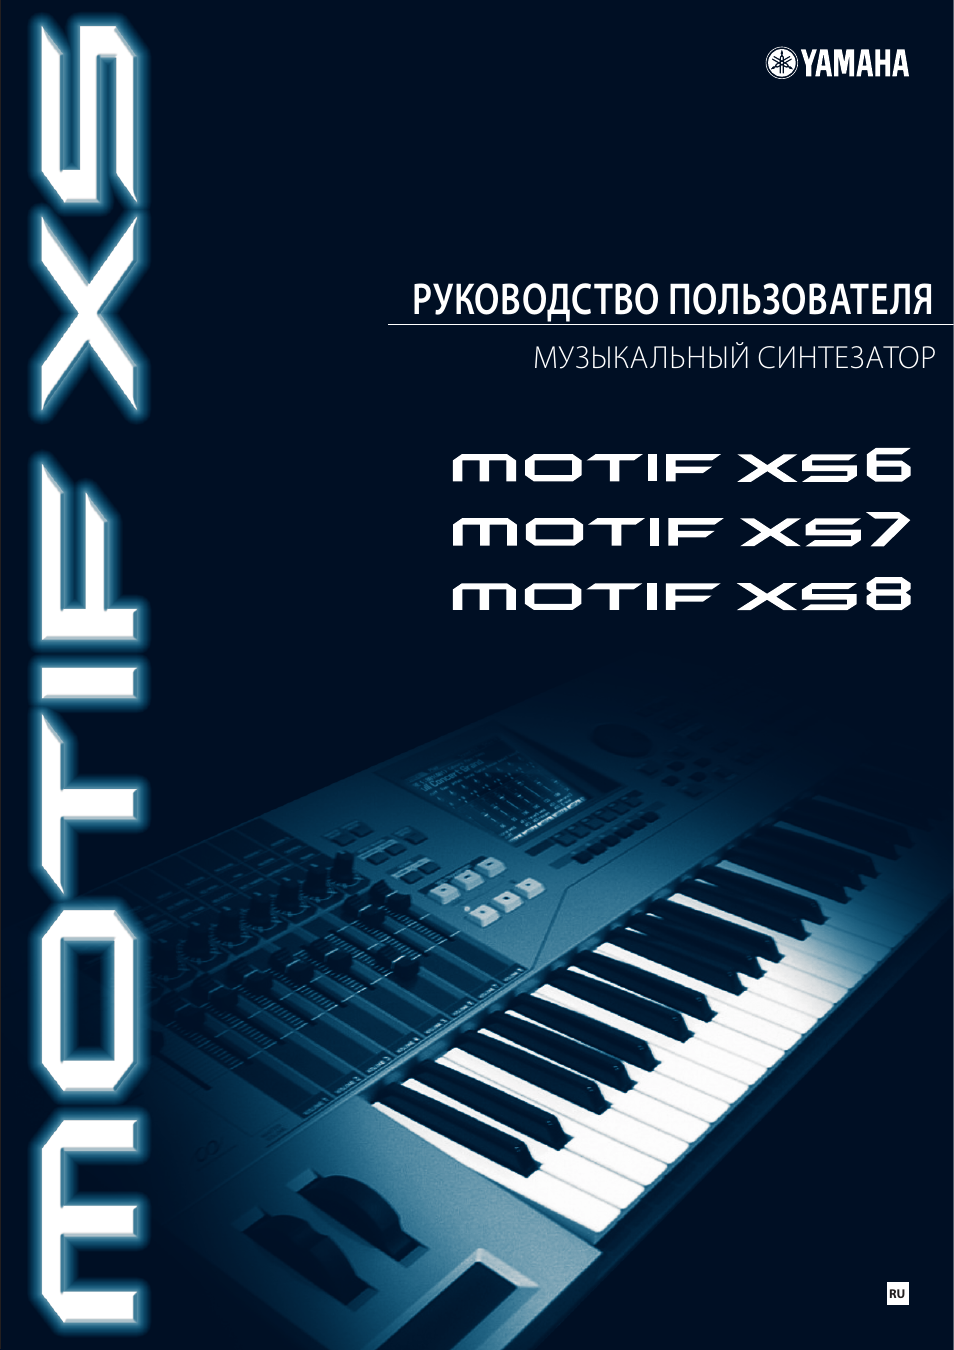 Инструкция Yamaha Motif Xs С Русским Переводом